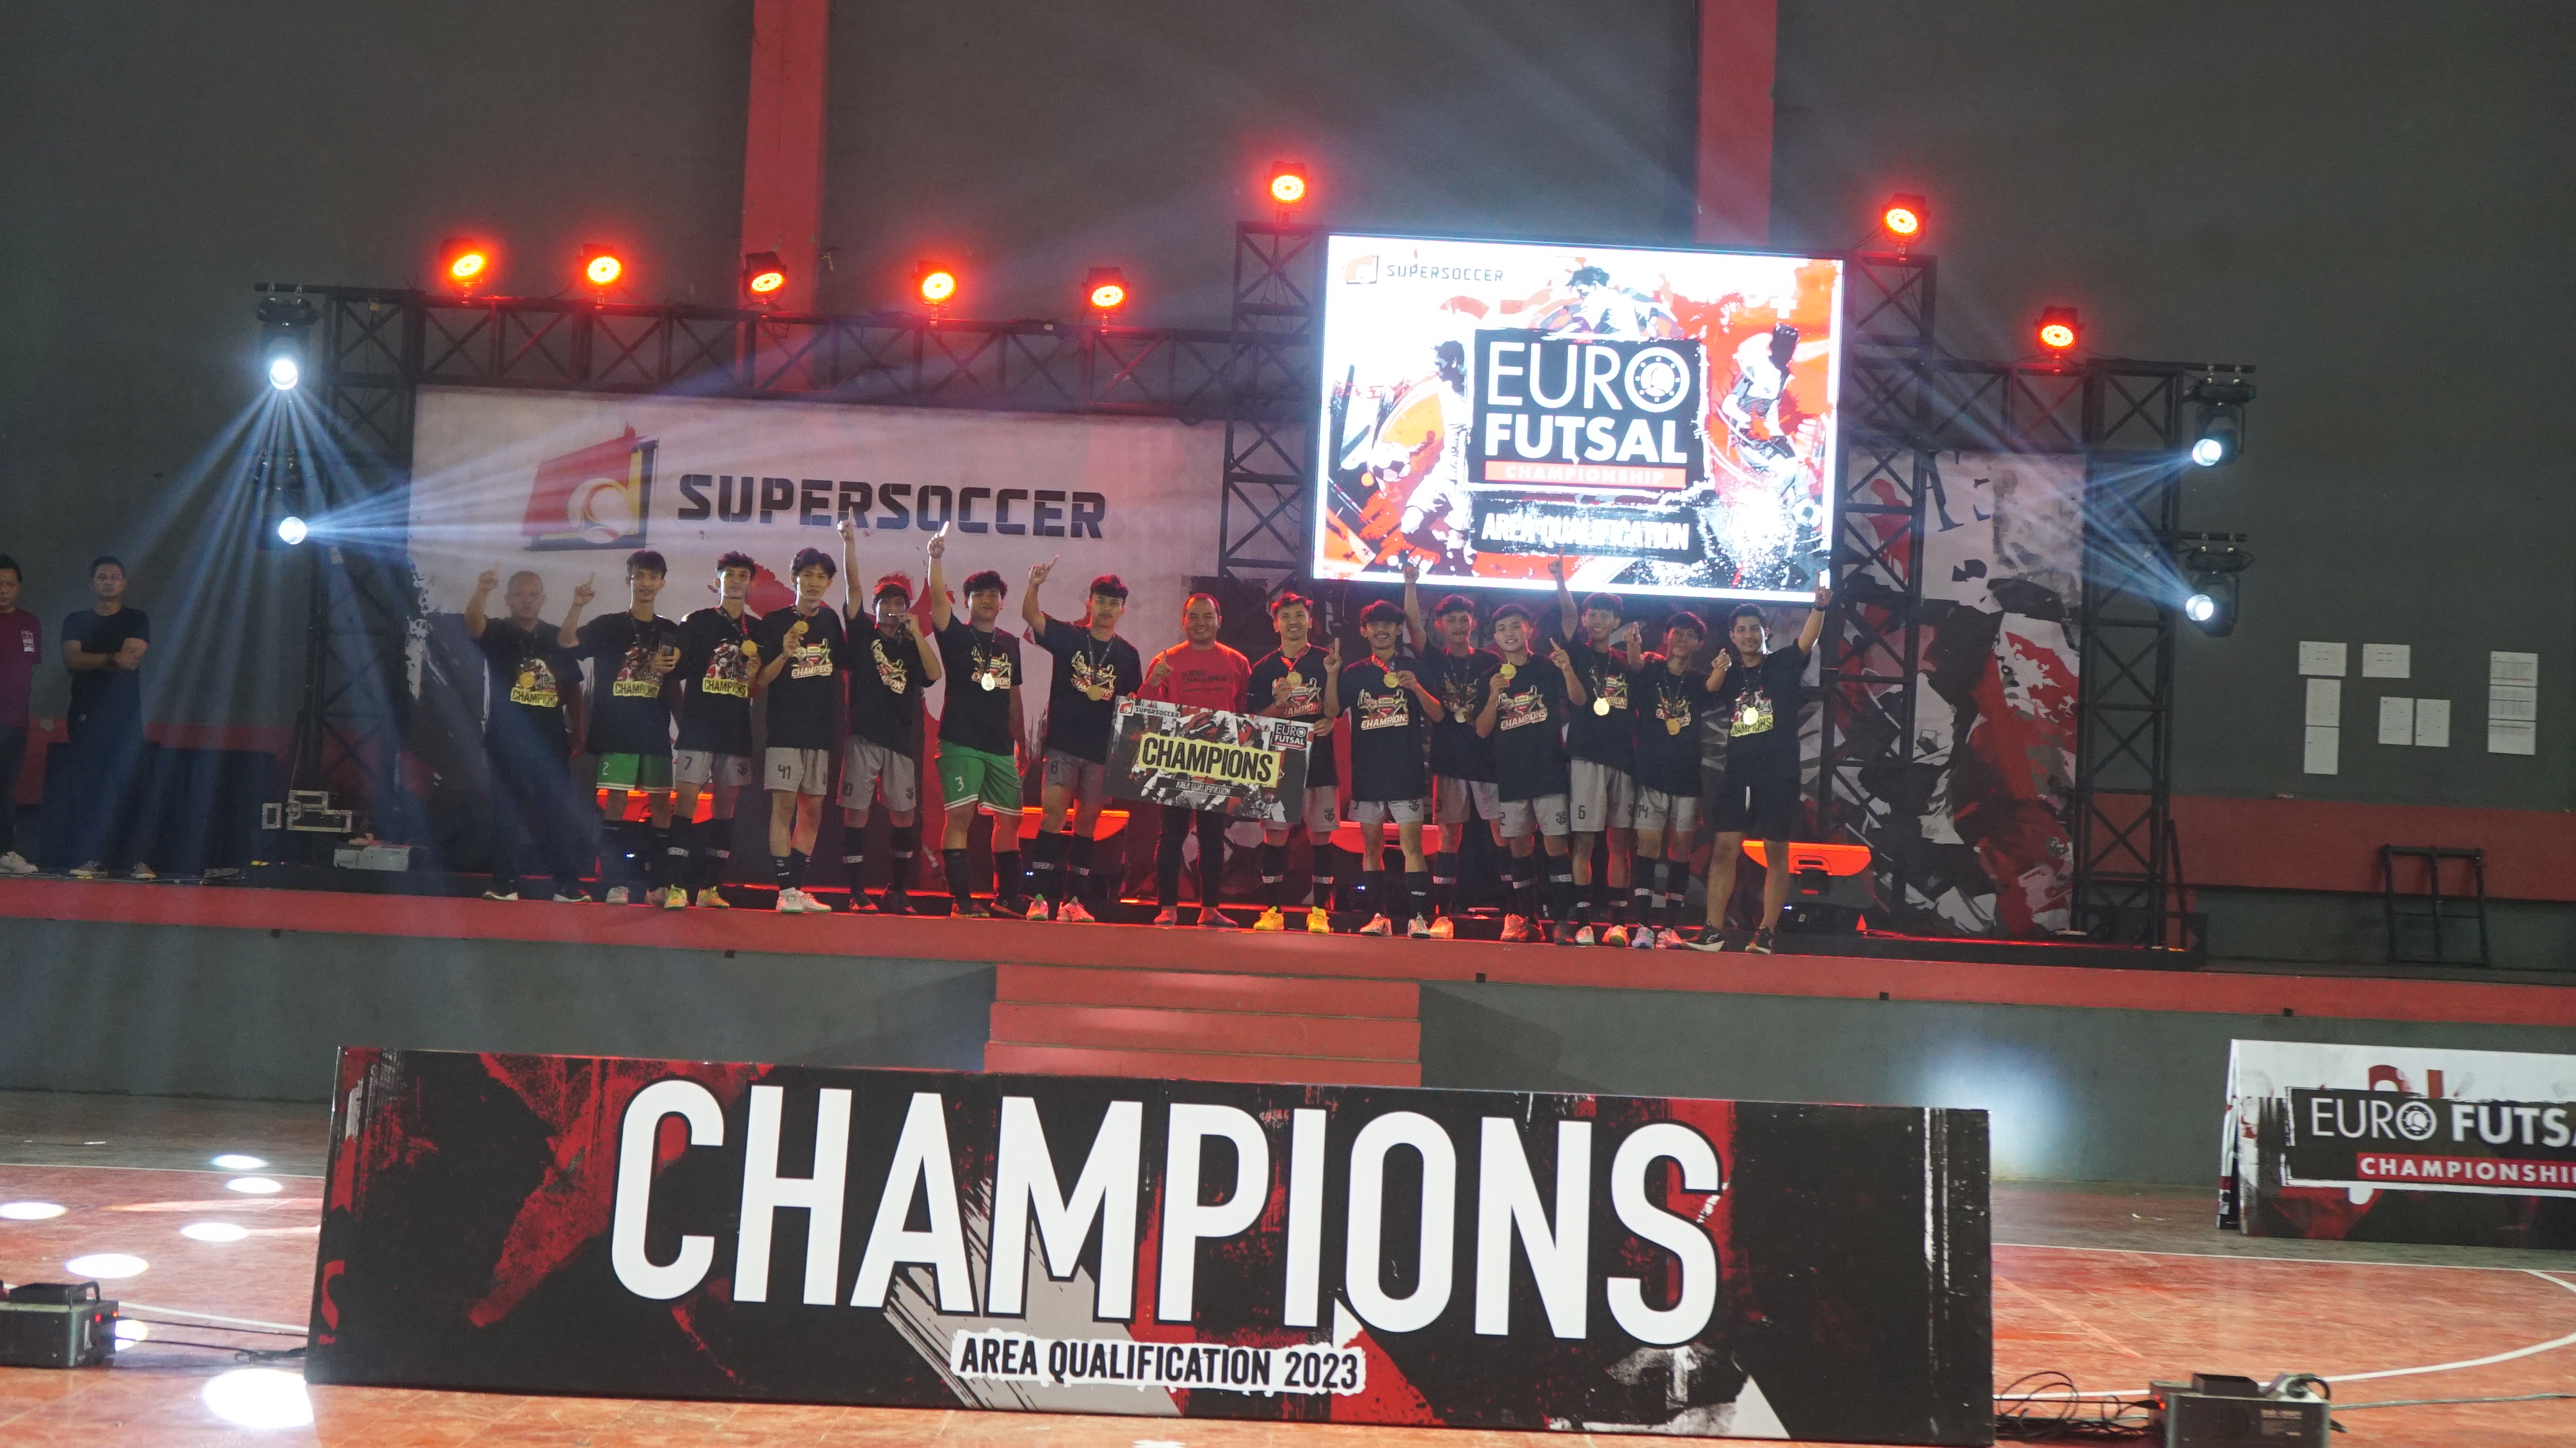 Champions of Area Qualification Cirebon Raya Milanisti Sezione Cirebon